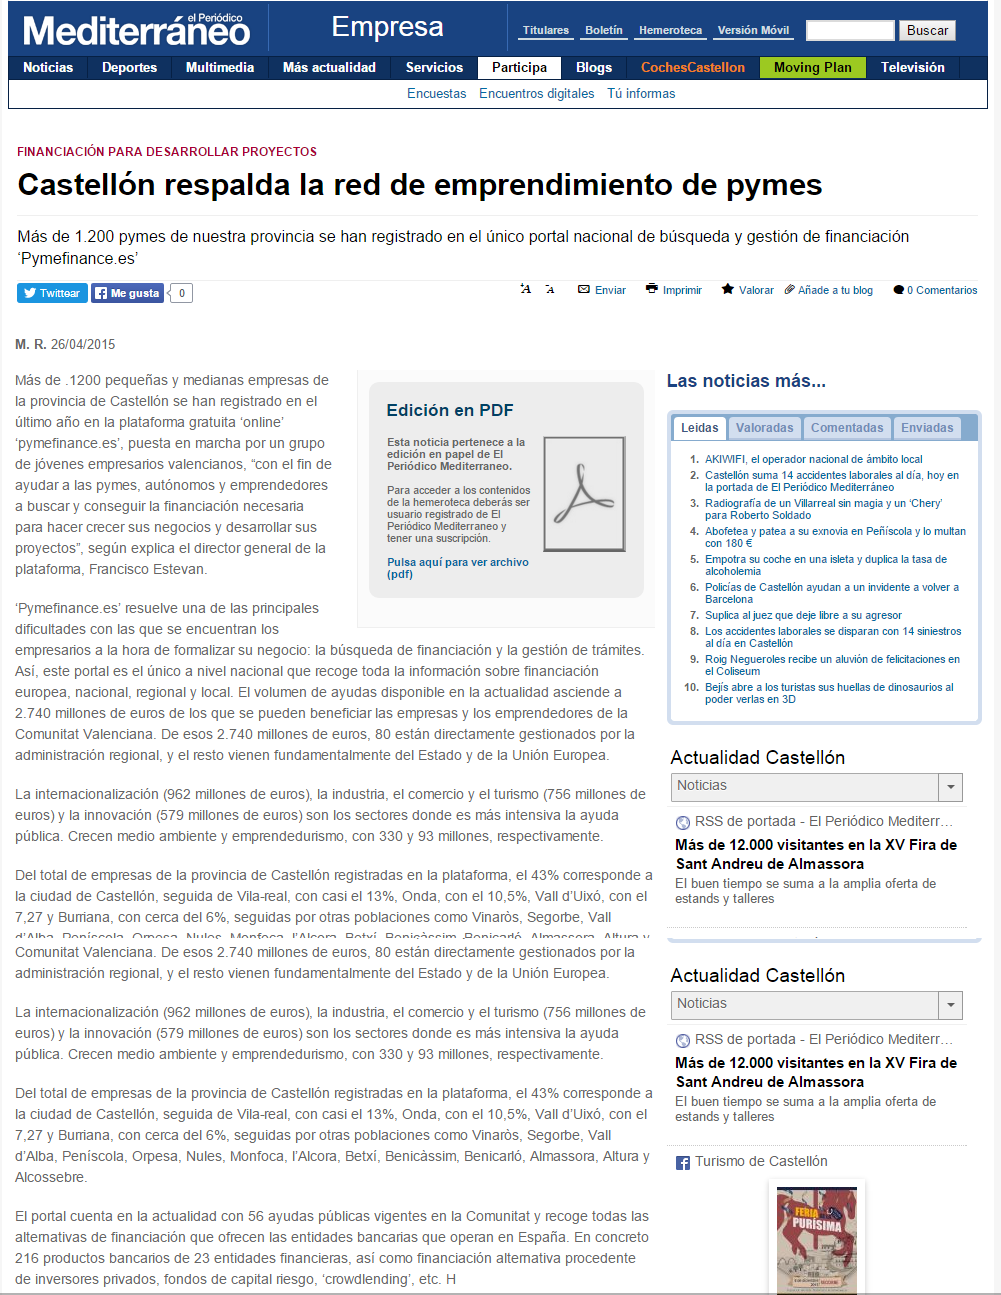 Castellón respalda la red de emprendimiento de pymes   Empresa   El Periódico Mediterraneo